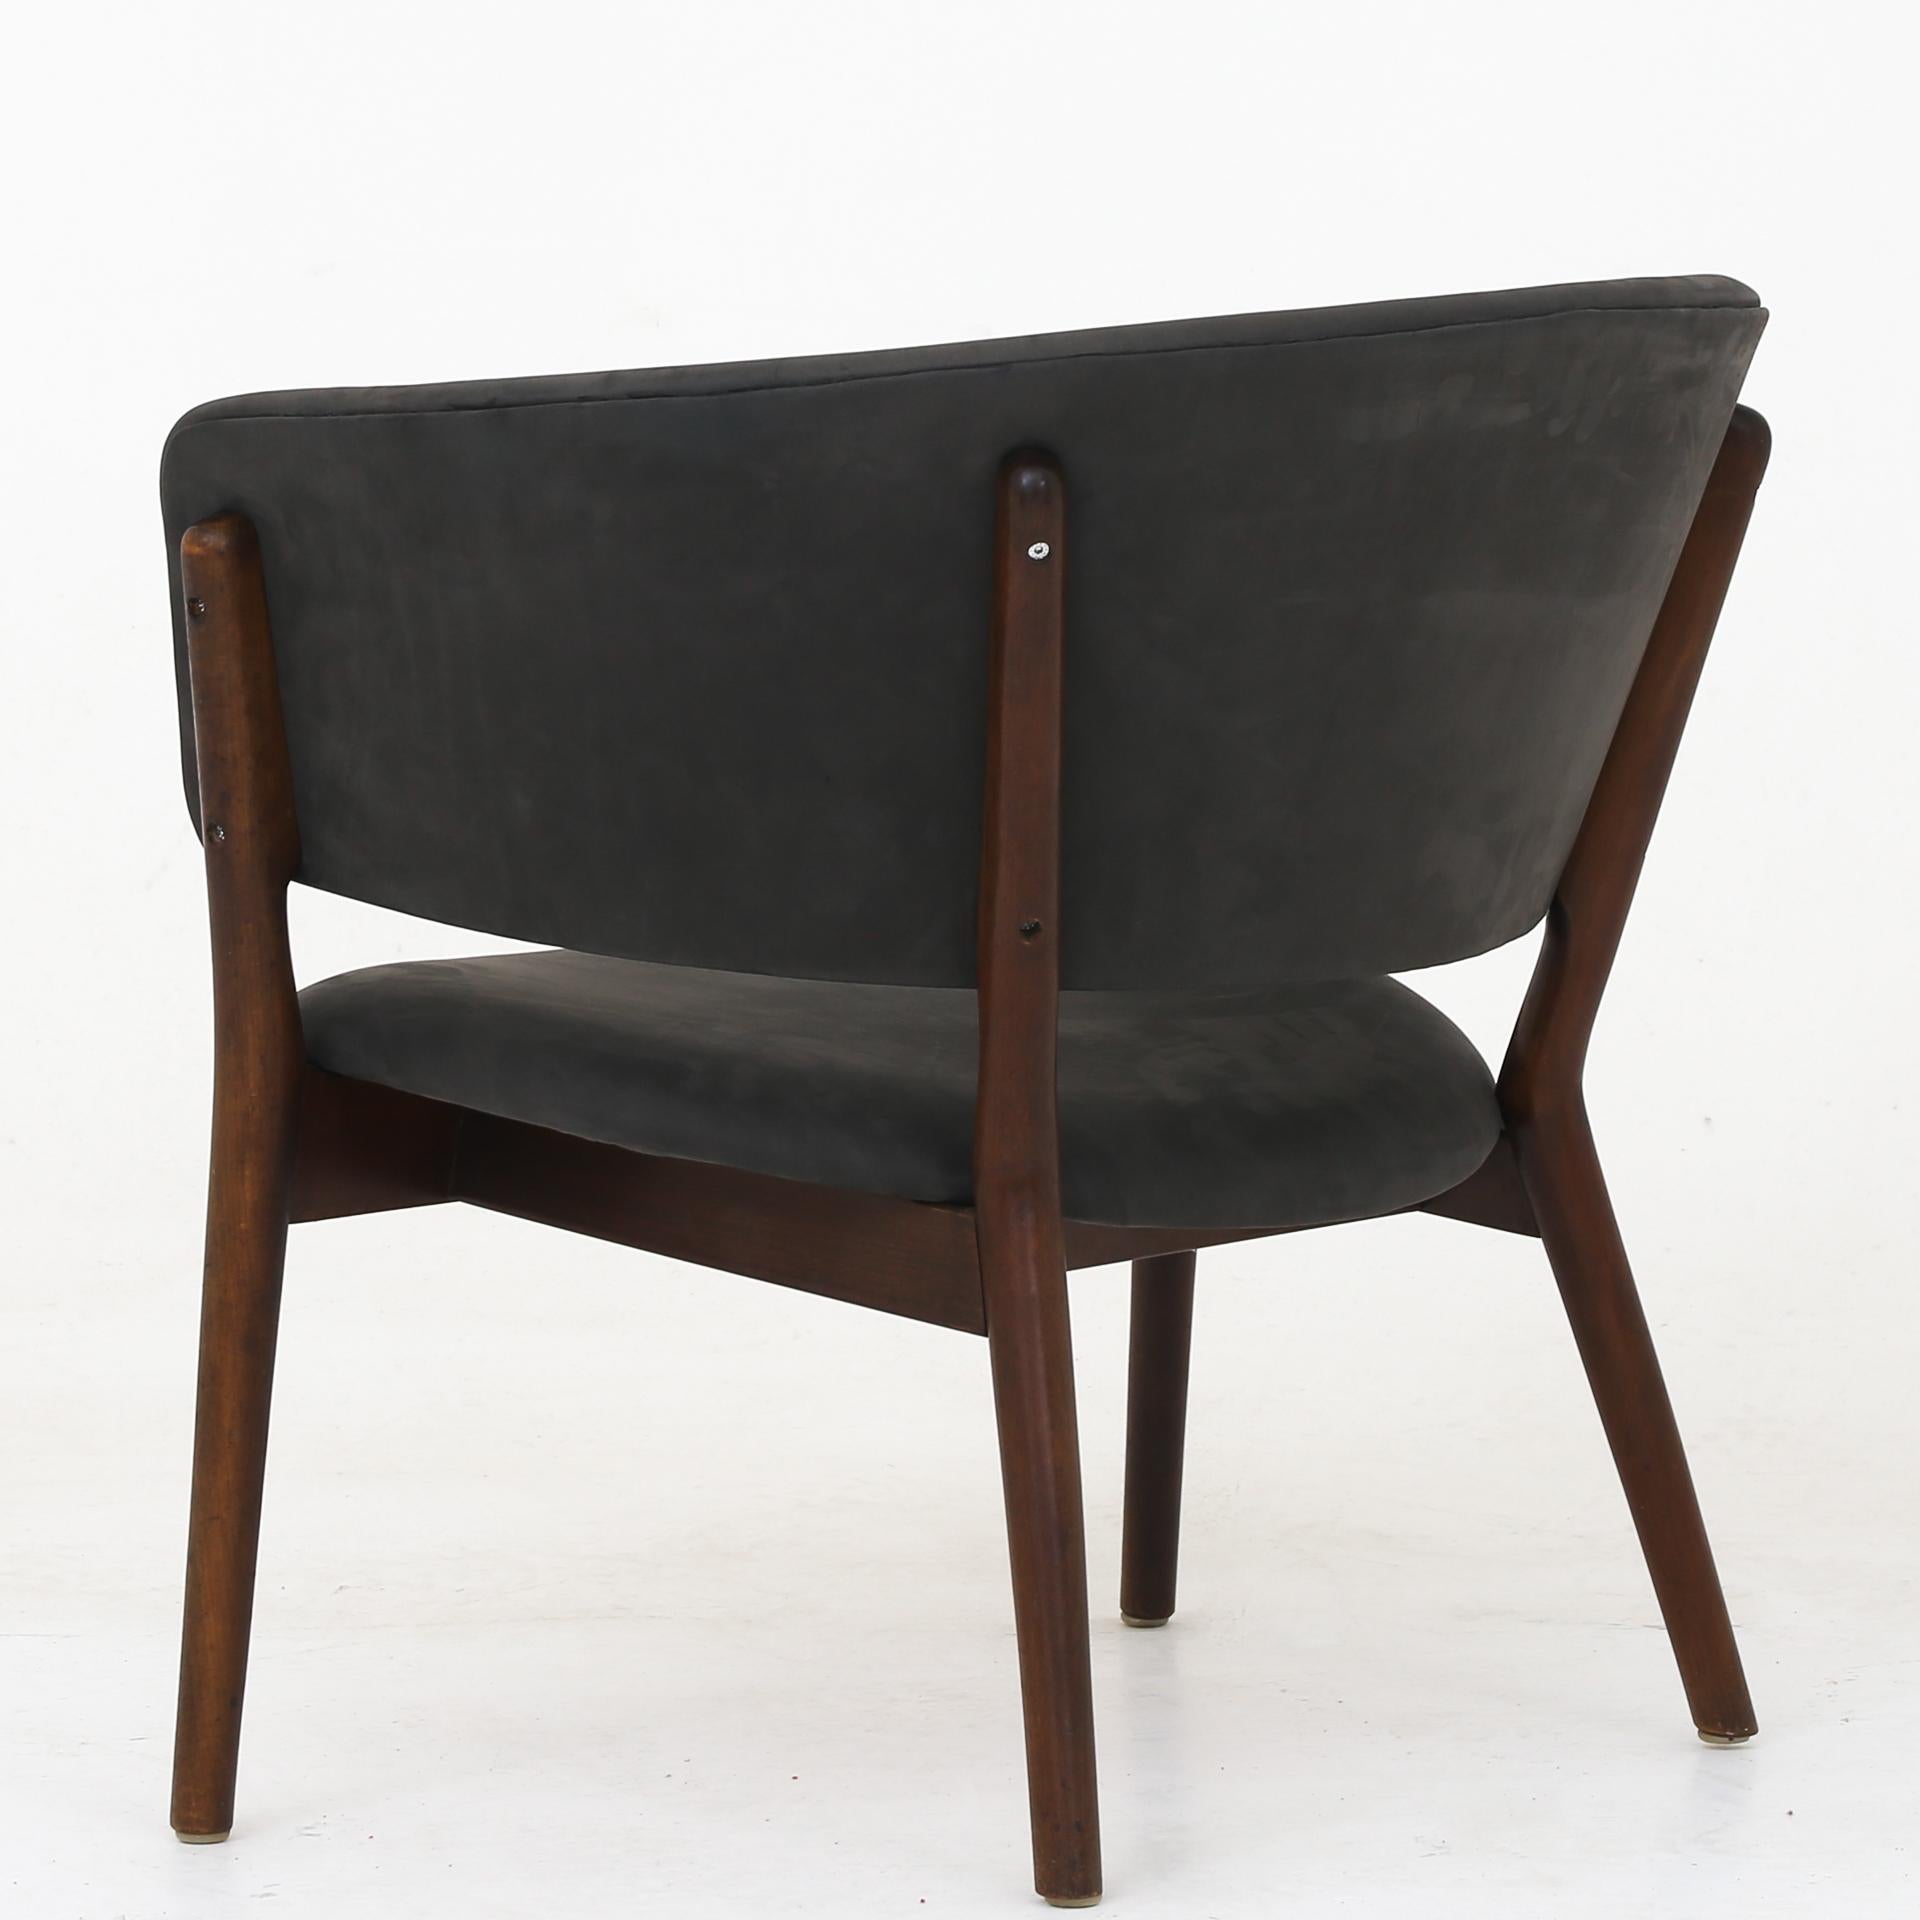 ND 83 - Sessel aus grauem Leder Dunes und gebeizter Buche. Entworfen im Jahr 1952. Nanna Ditzel / Søren Willadsen.